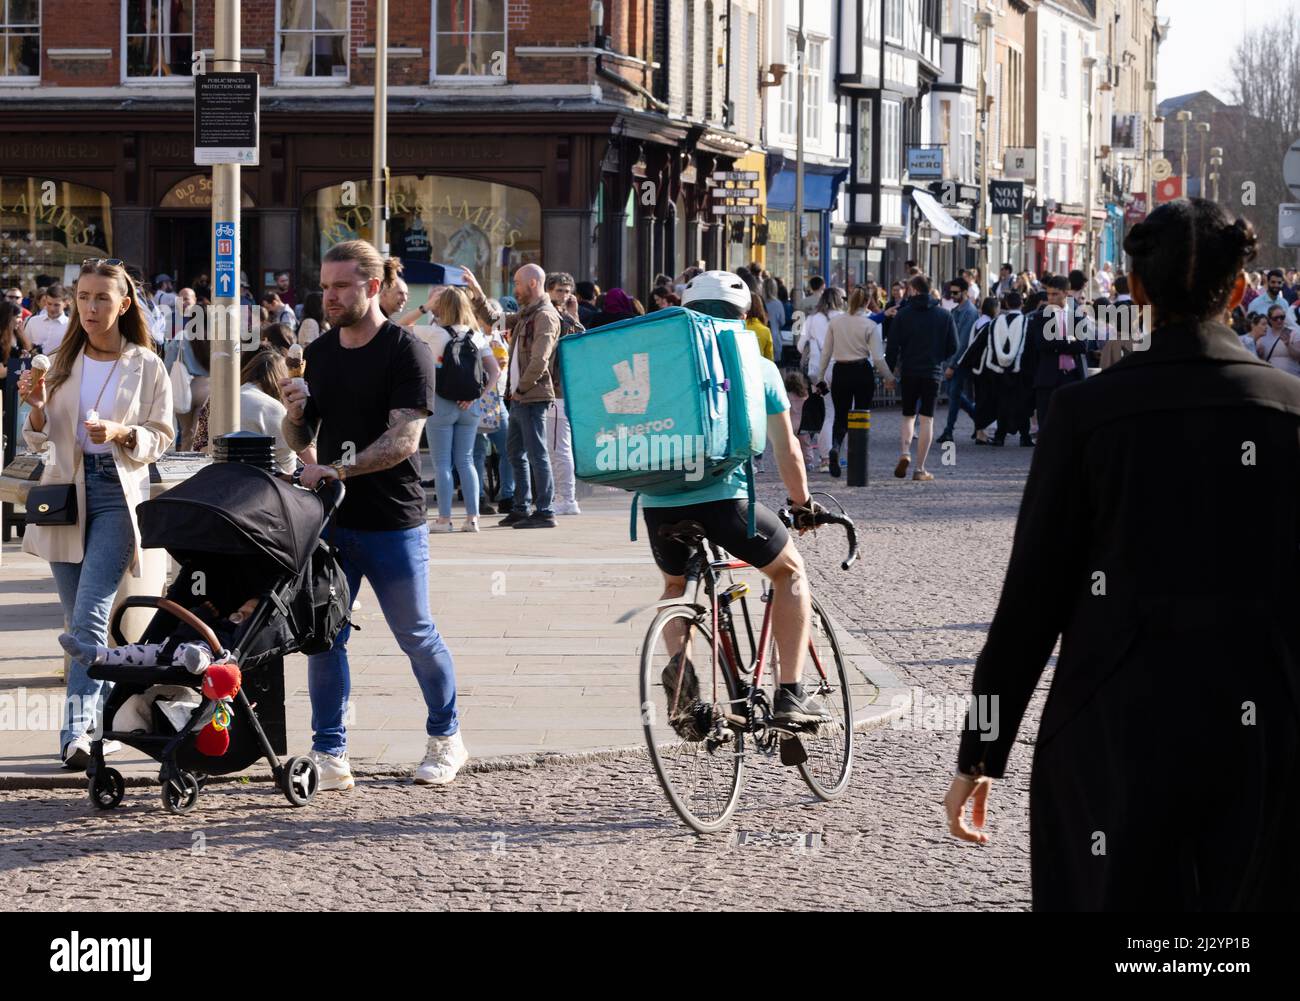 Deliveroo rider; Deliveroo cyclist delivering food, rear view, Cambridge UK Stock Photo